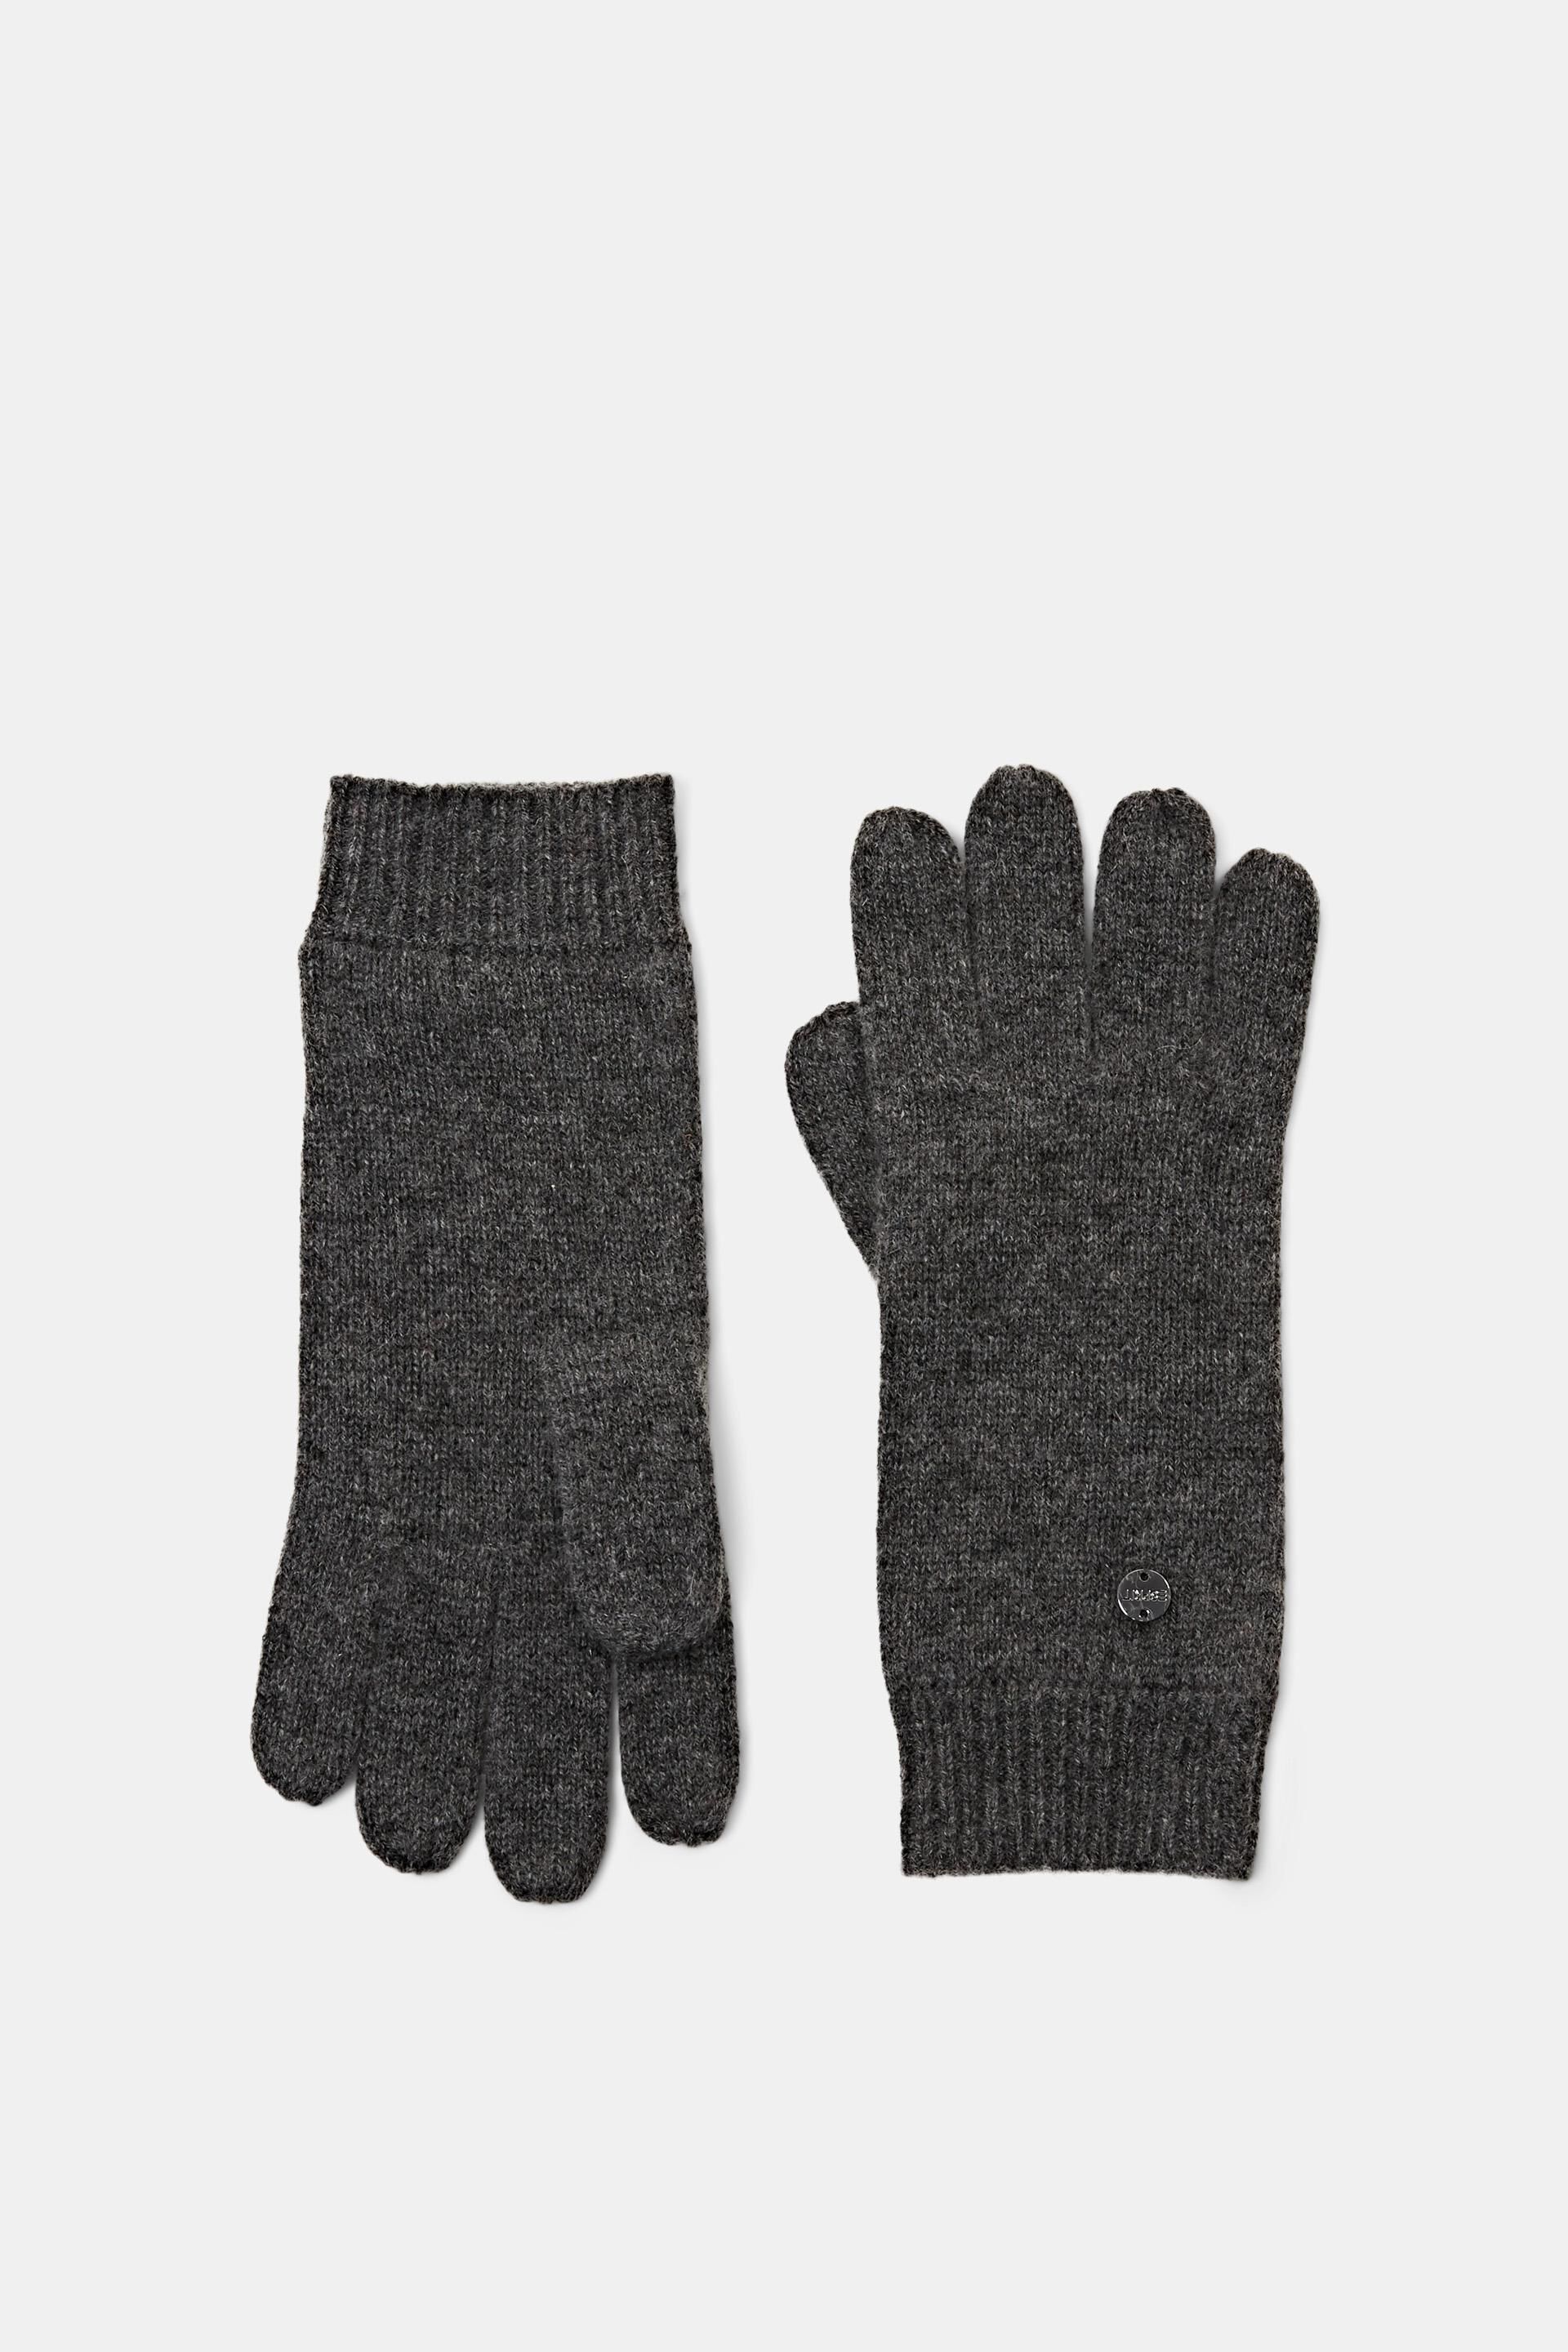 Rabatt 59 % DAMEN Accessoires Handschue Grau/Weiß Einheitlich NoName Handschue 